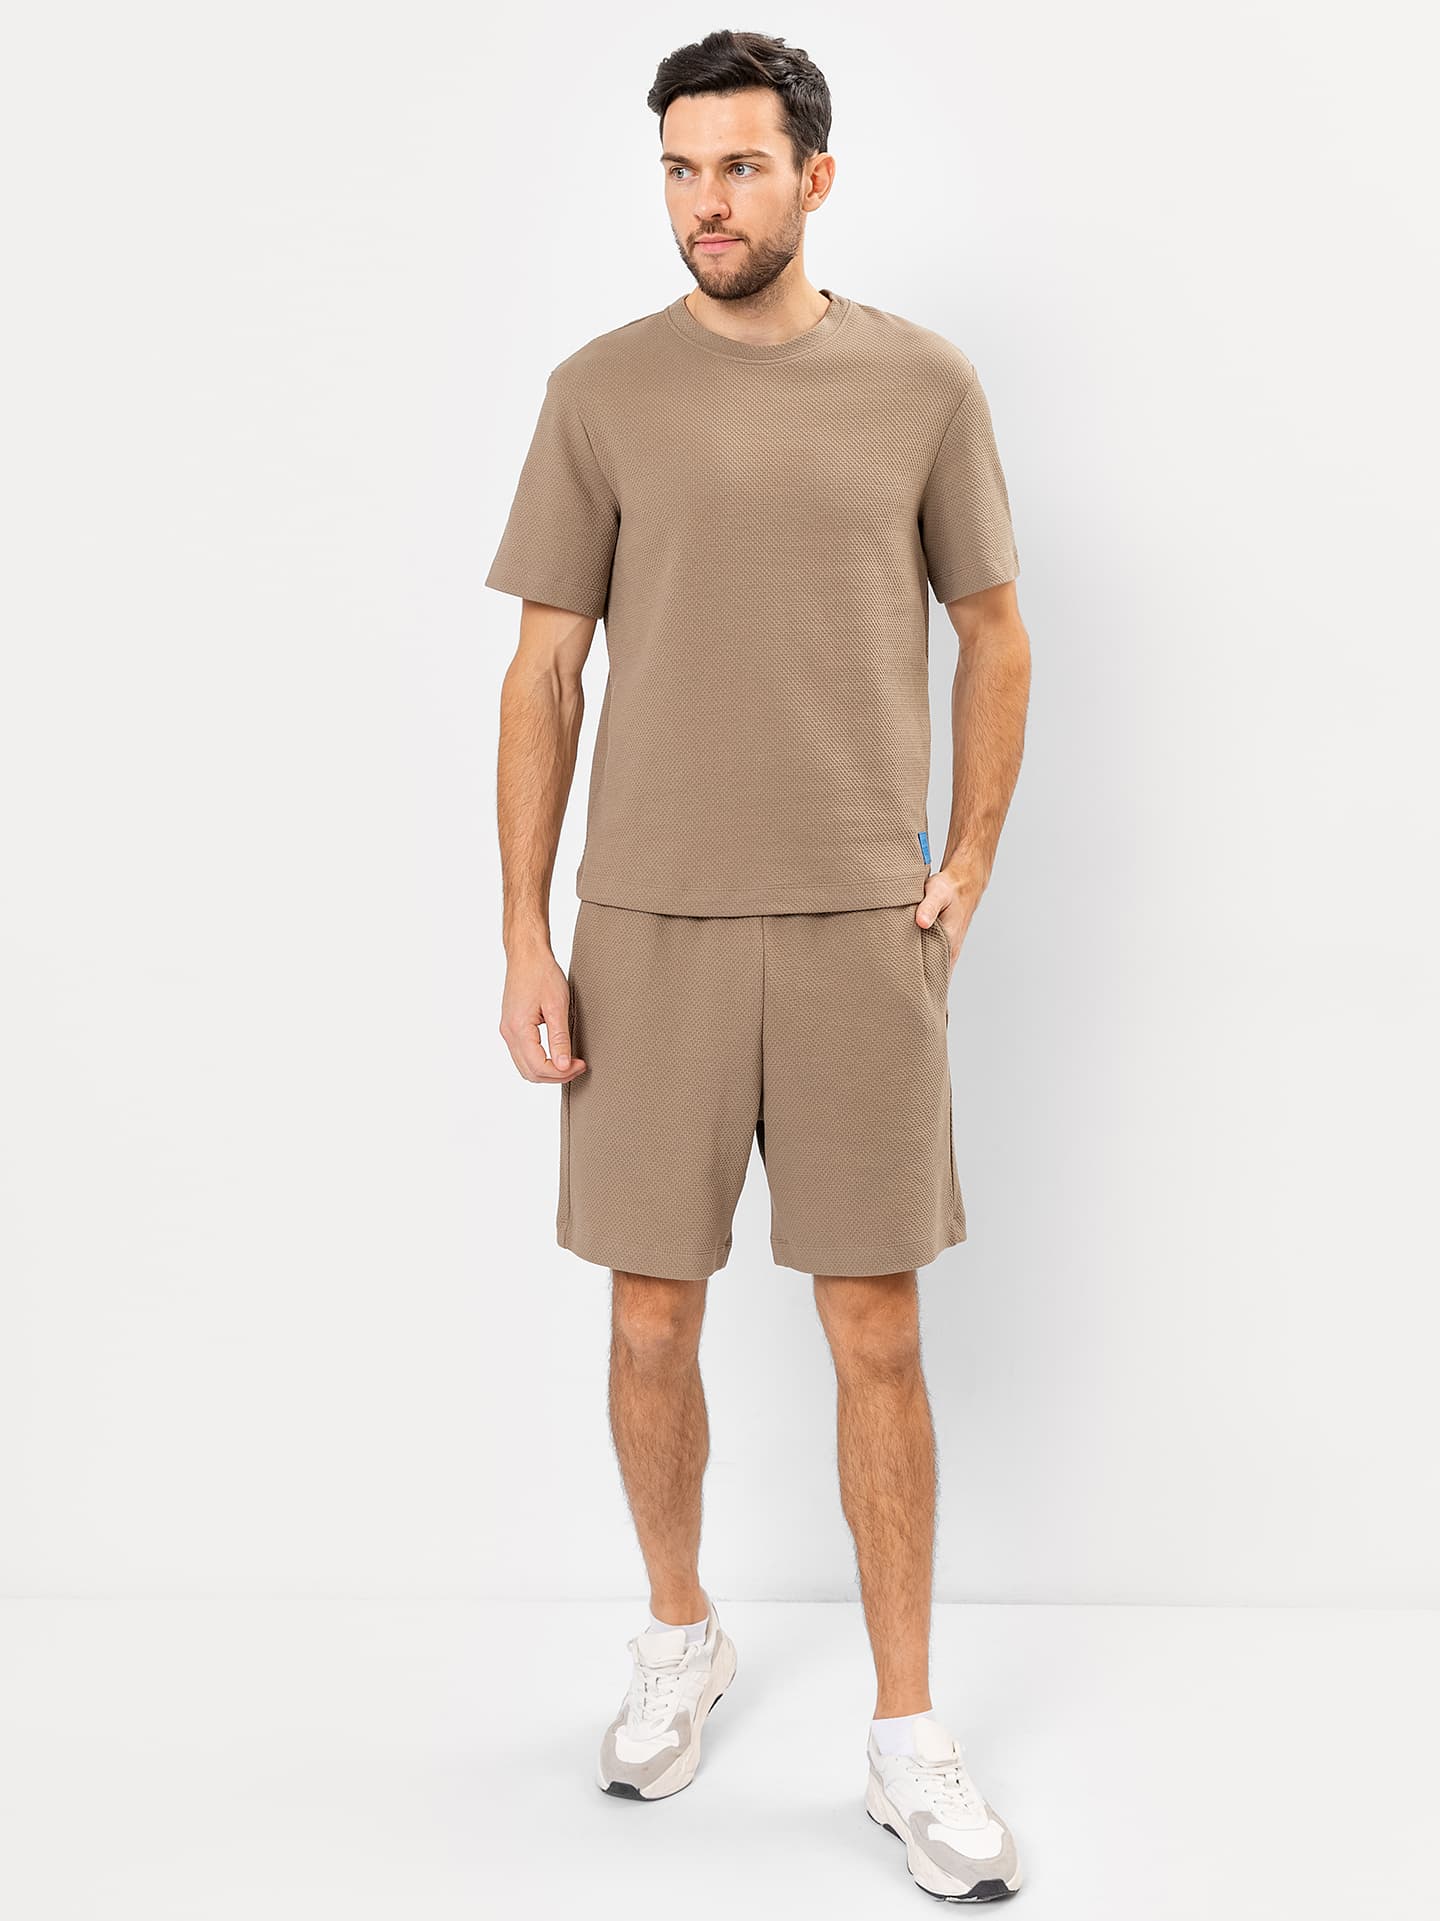 Комплект хлопковый мужской (футболка, шорты) коричневый